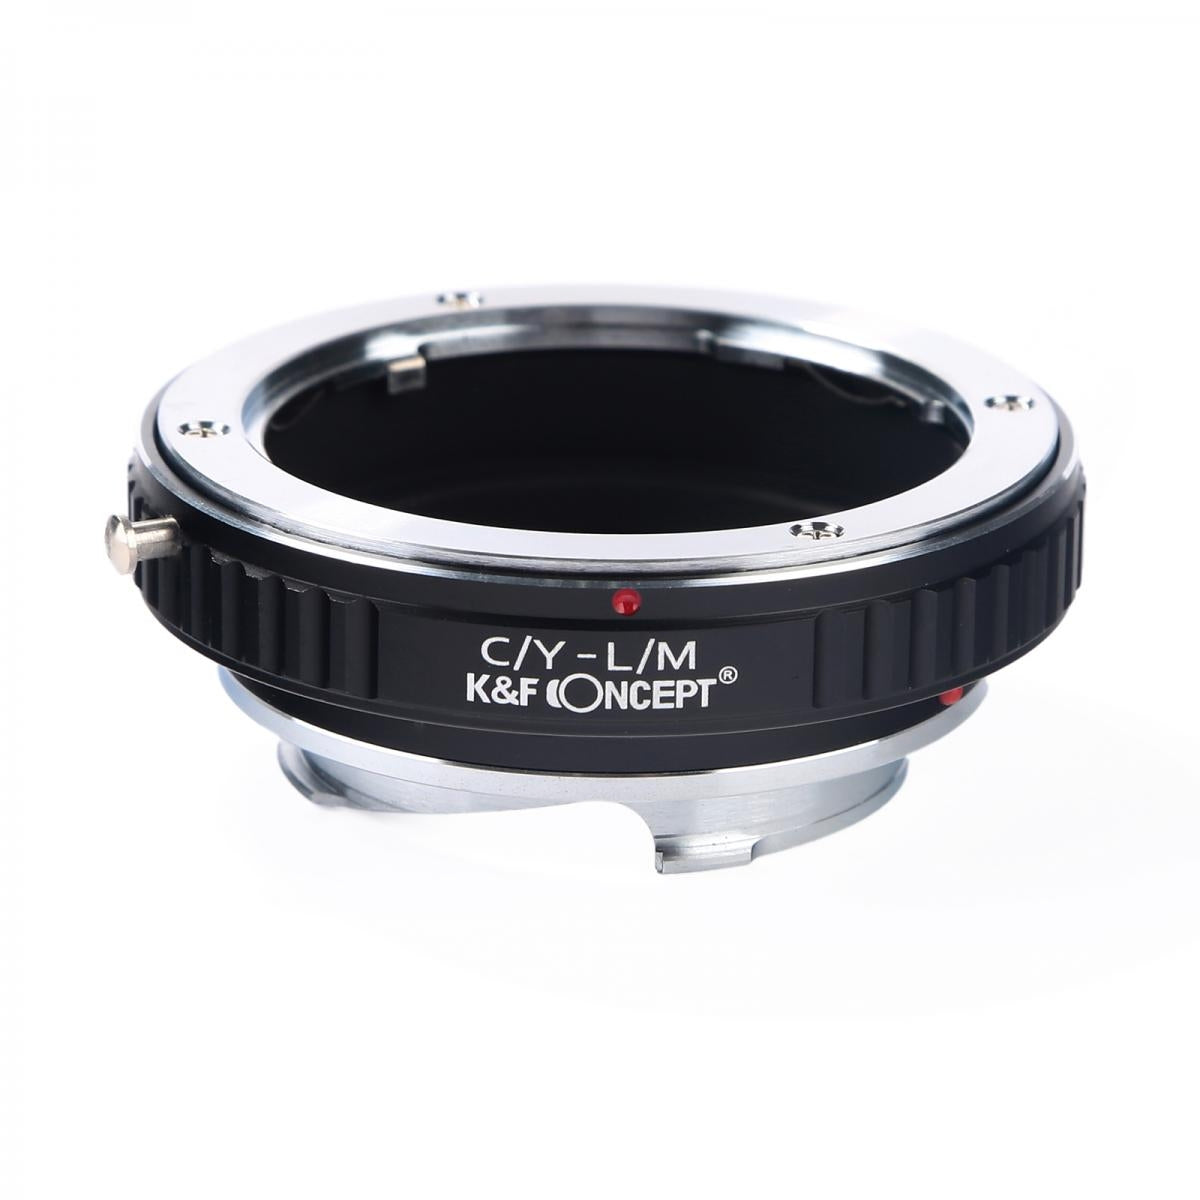 K&F Concept Anello Adattatore per Obiettivi Contax Yashica a Leica M